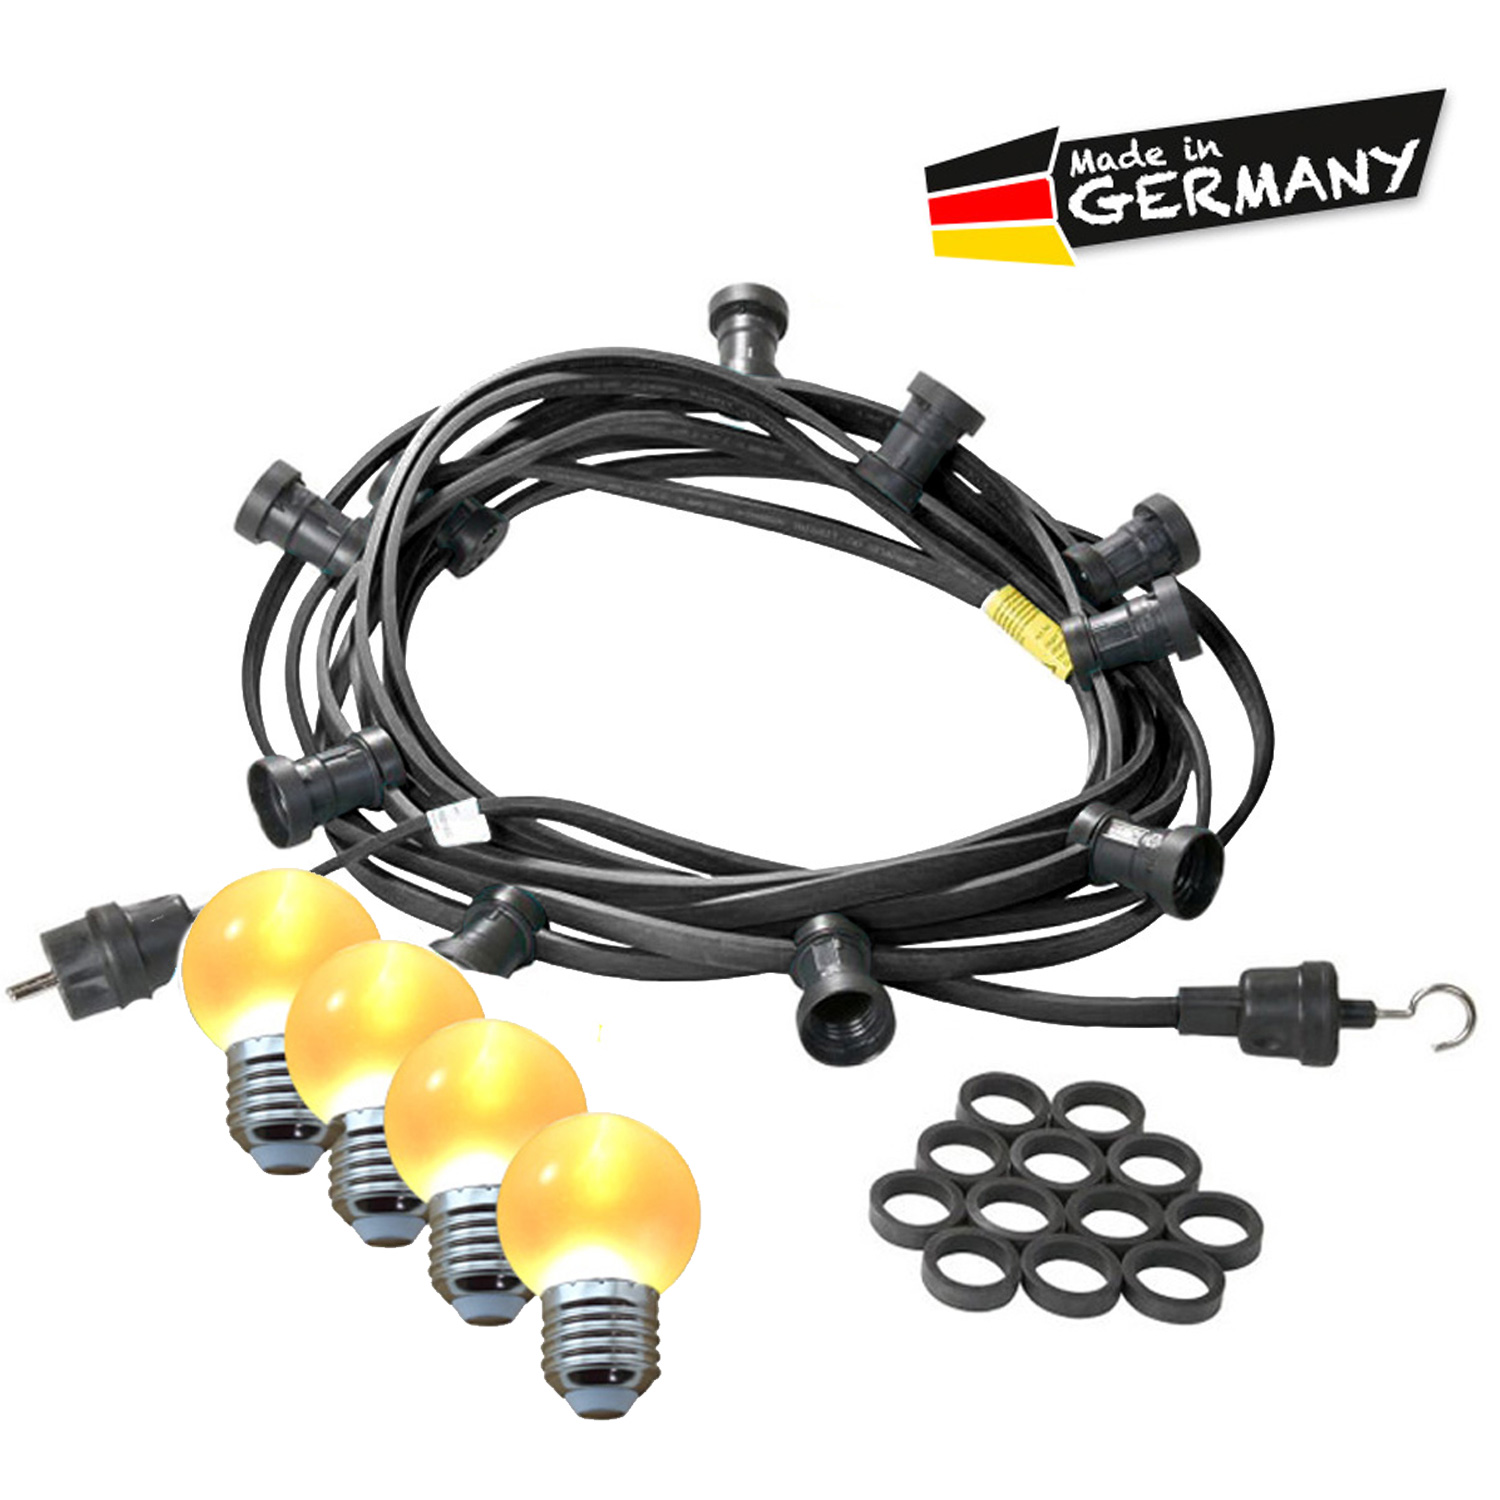 Illu-/Partylichterkette 40m - Außenlichterkette - Made in Germany - 40 ultra-warmweiße LED Kugeln